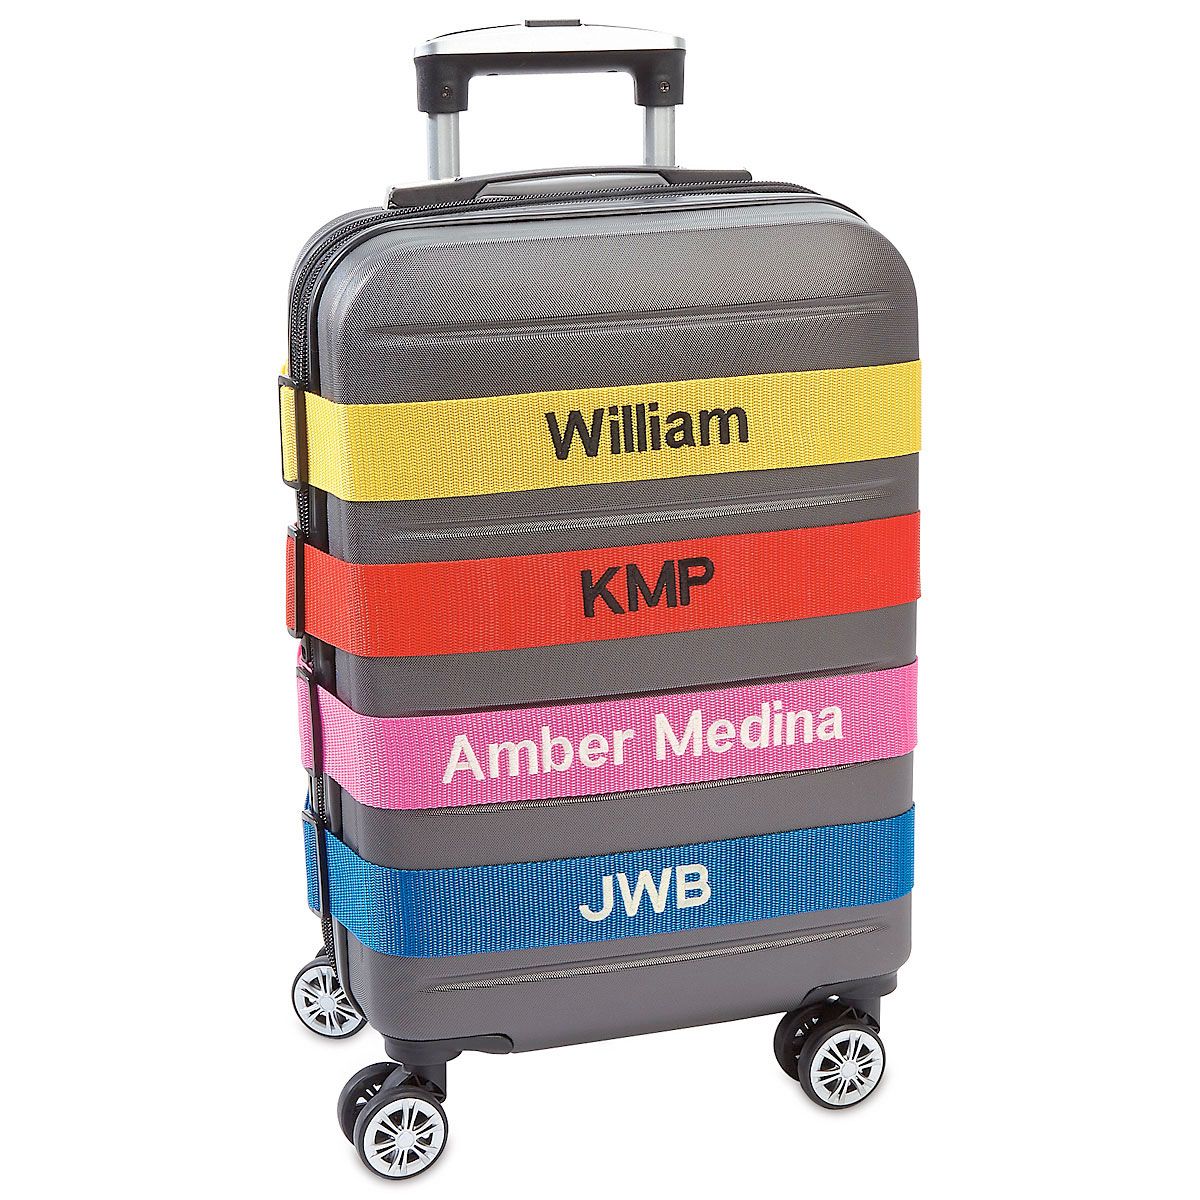 Luggage Belt Luggage Strap Suitcase Strap Belt #04 Bags & Purses Luggage & Travel Luggage Straps Travel Belt Personalised Luggage strap Security Luggage Strap 